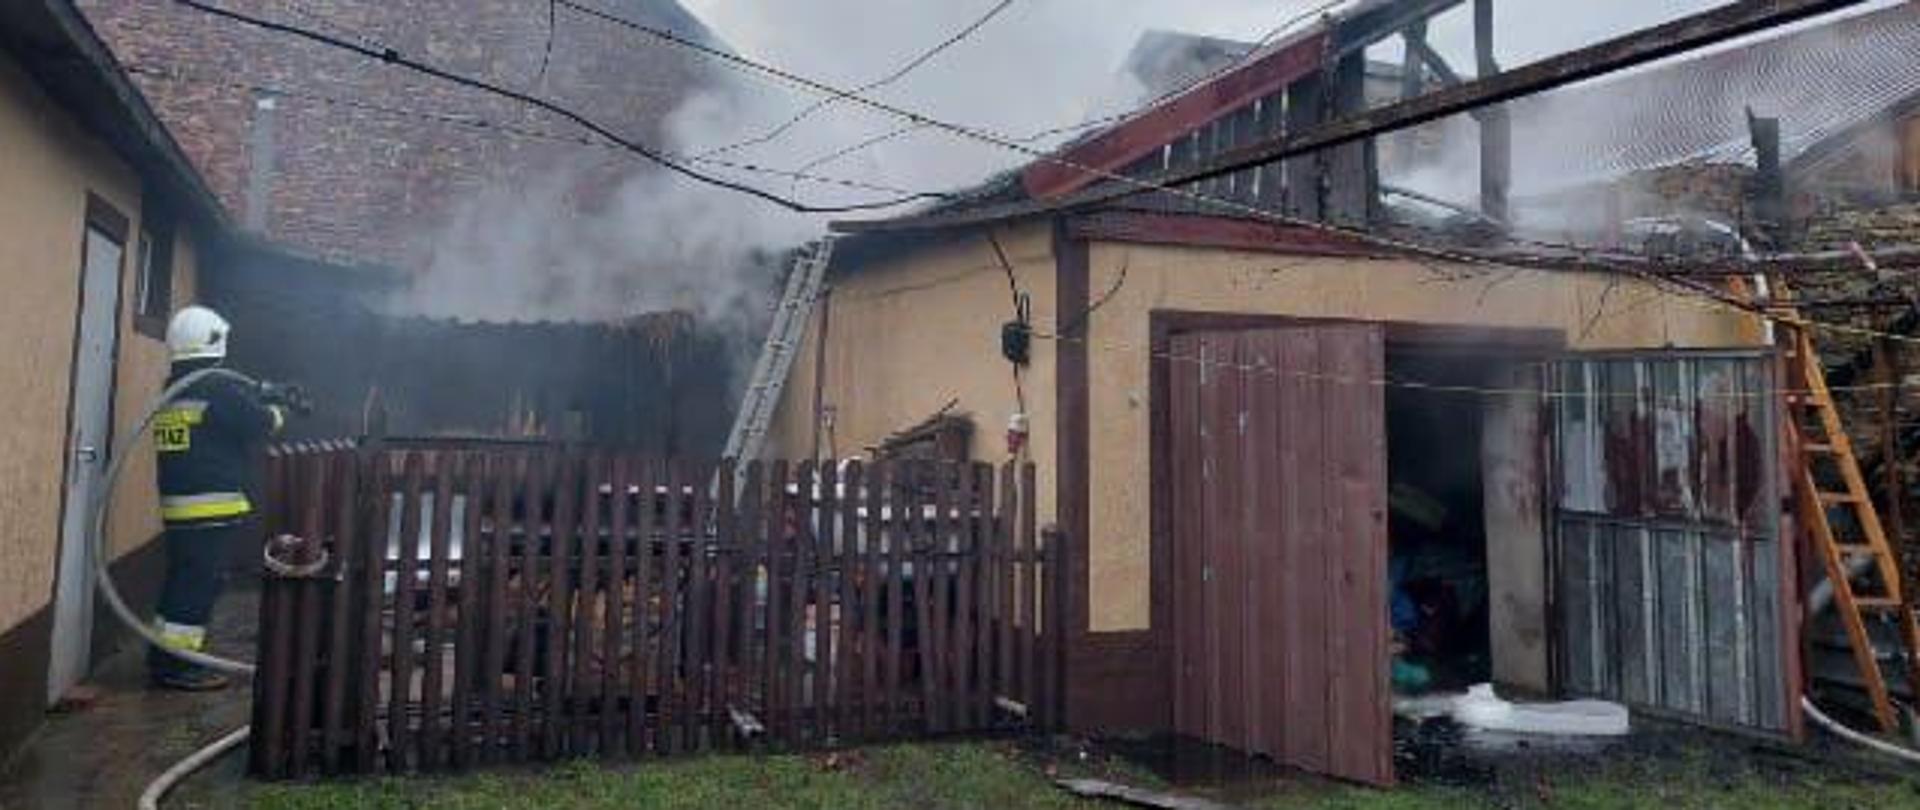 Na zdjęciu po lewej stronie stoi spalony garaż, centralnie i z lewej widać zagrożone budynki, za płotem stoi strażak z wężem gaśniczym na ramieniu